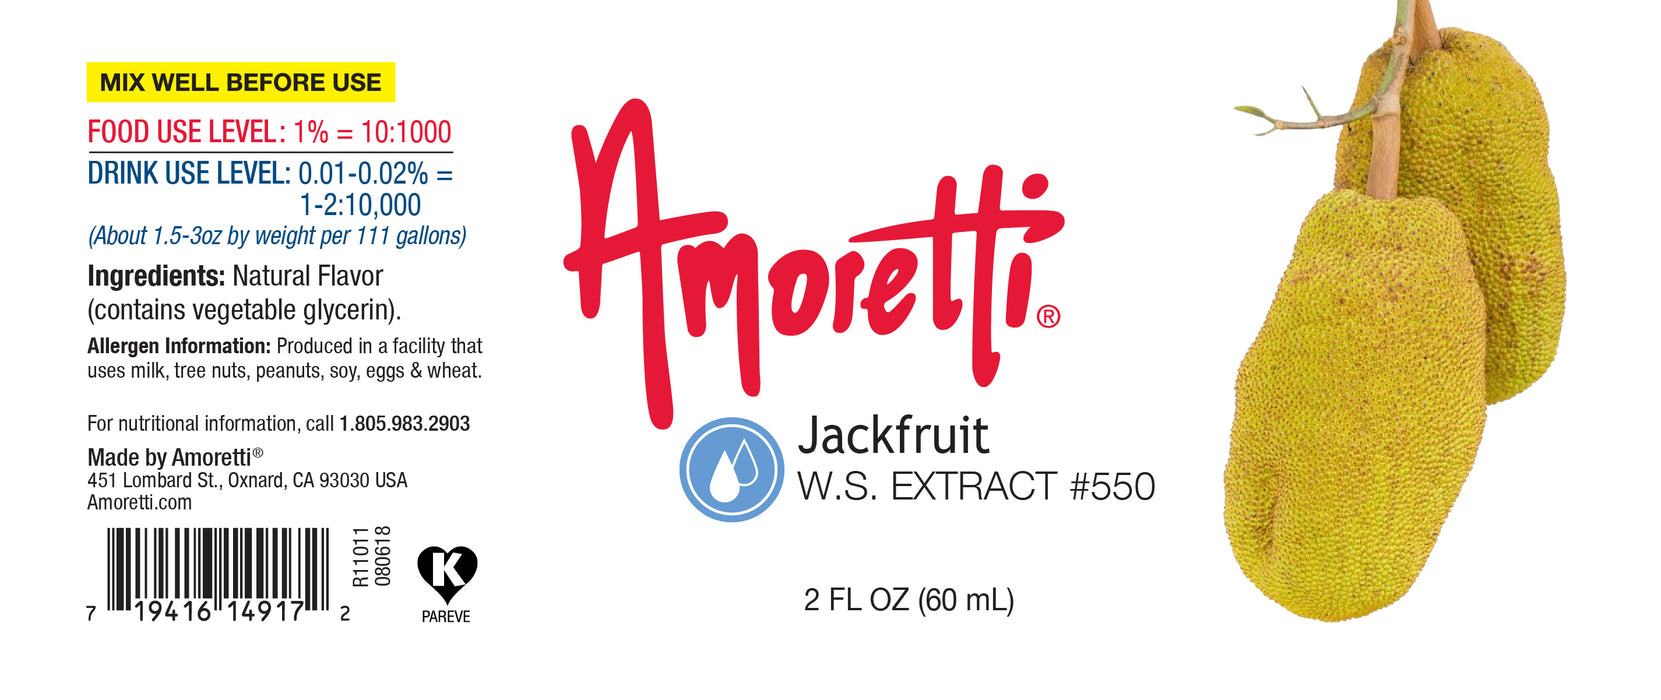 Jackfruit Extract Water Soluble